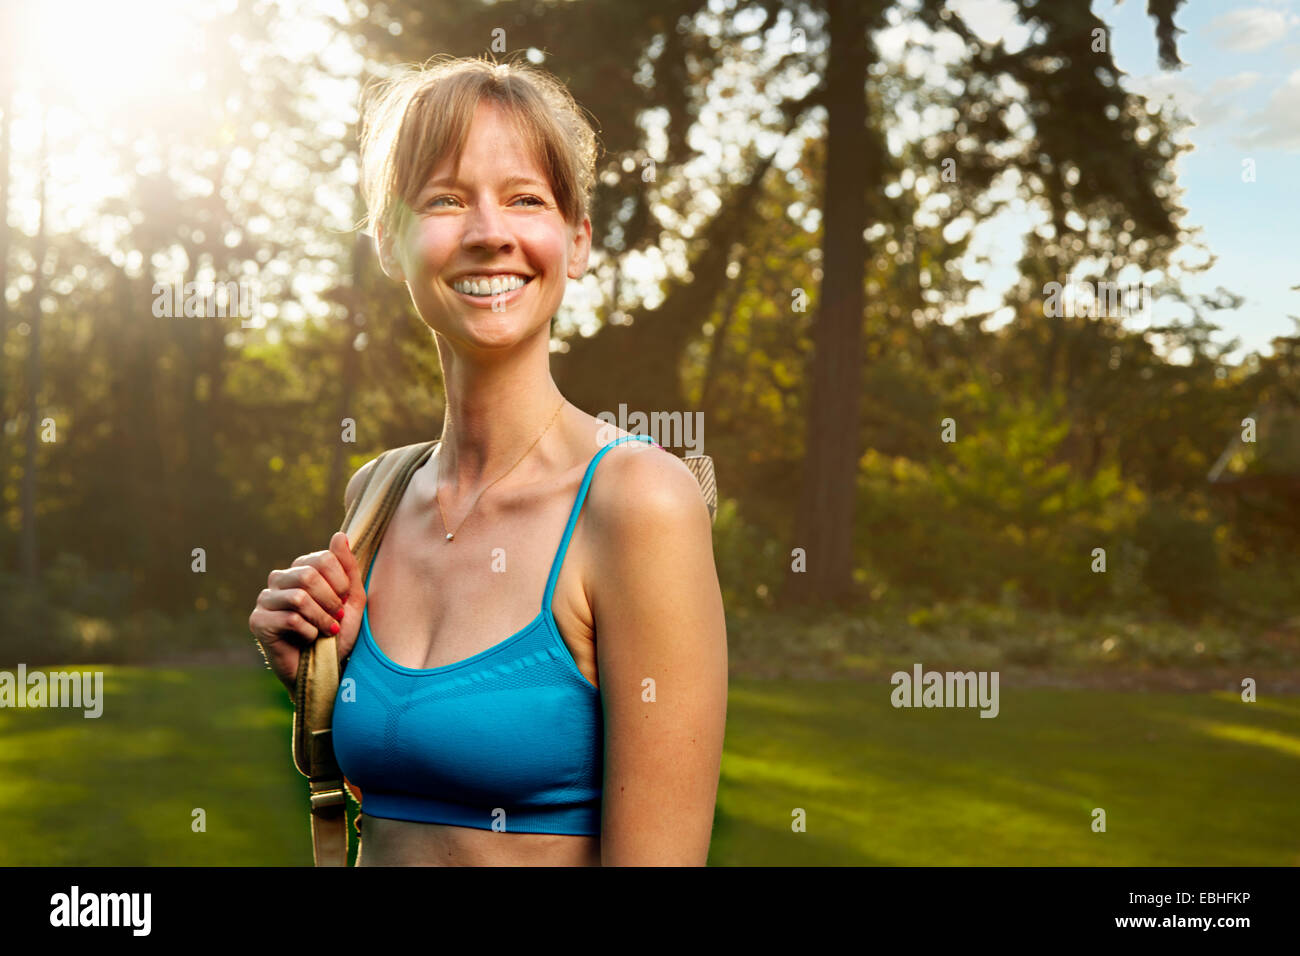 Portrait of smiling female runner in park Stock Photo